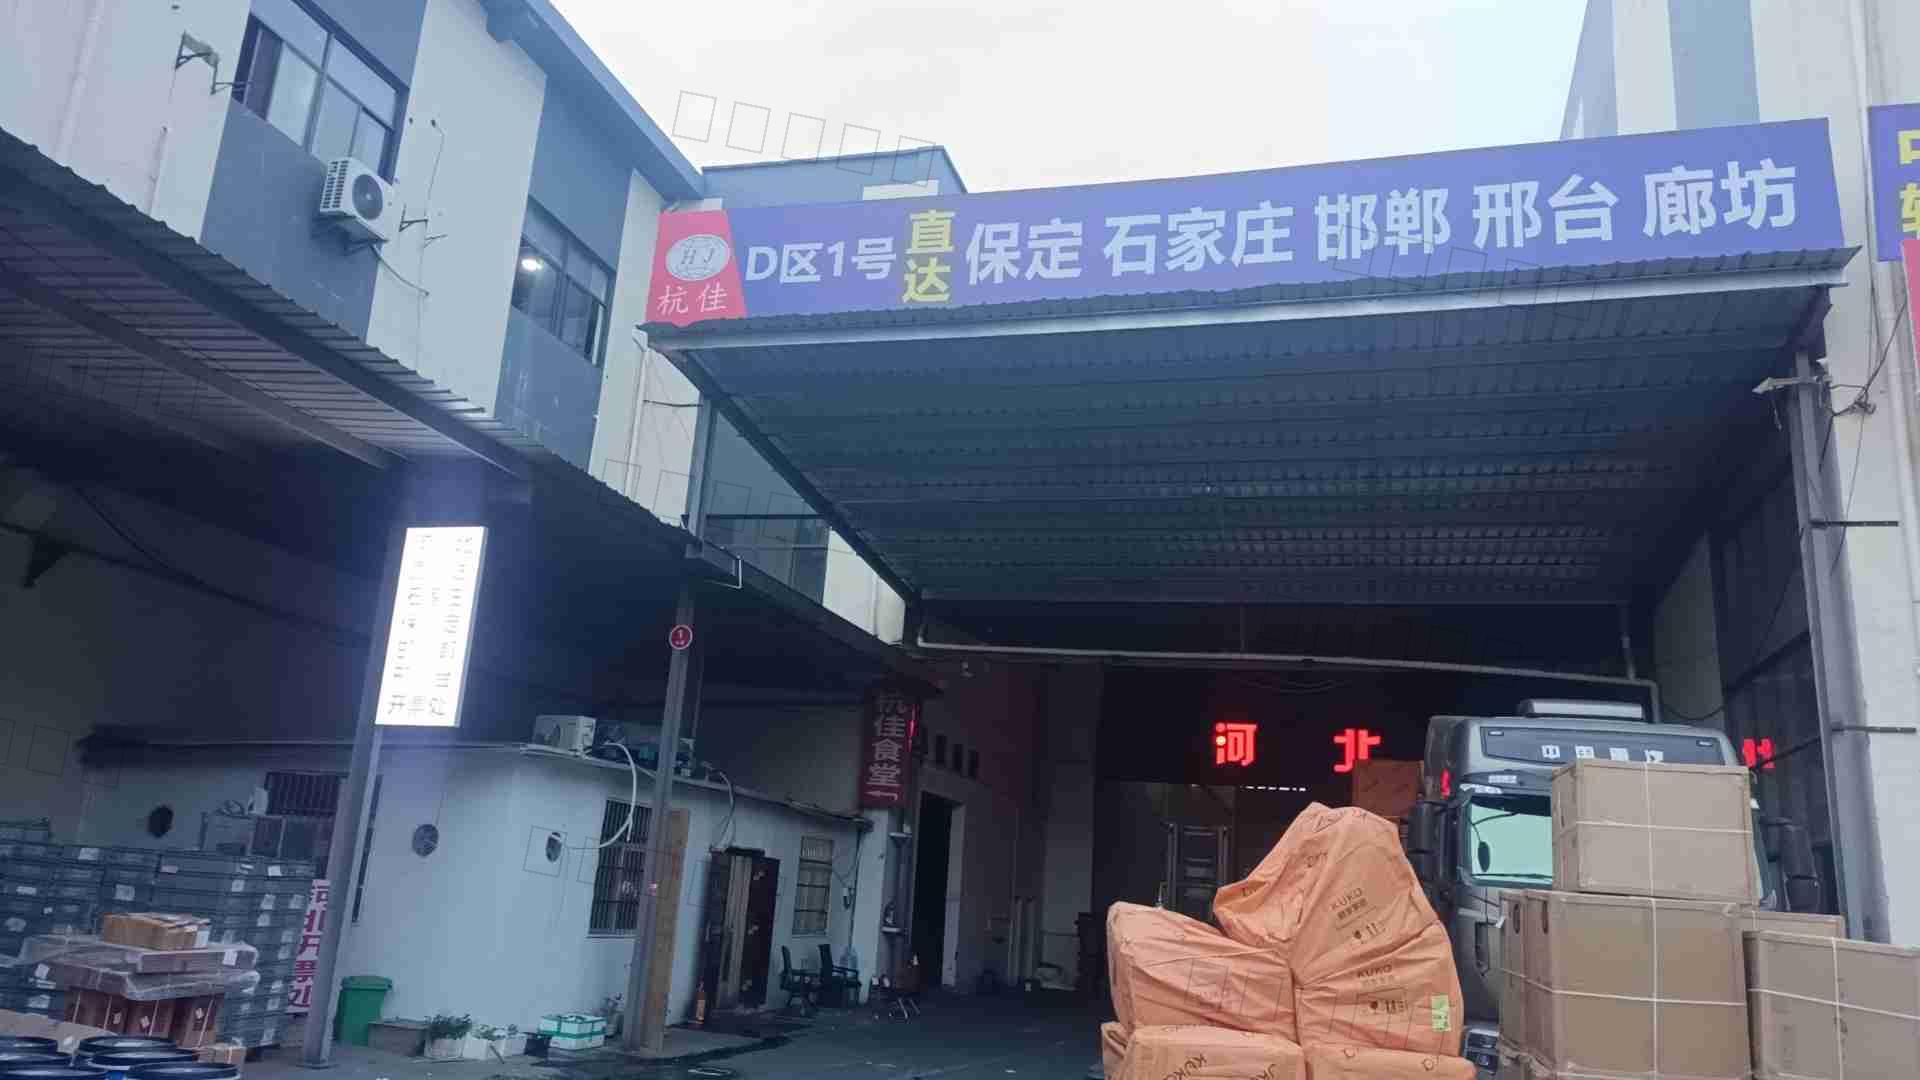  杭州海泰供应链管理有限公司